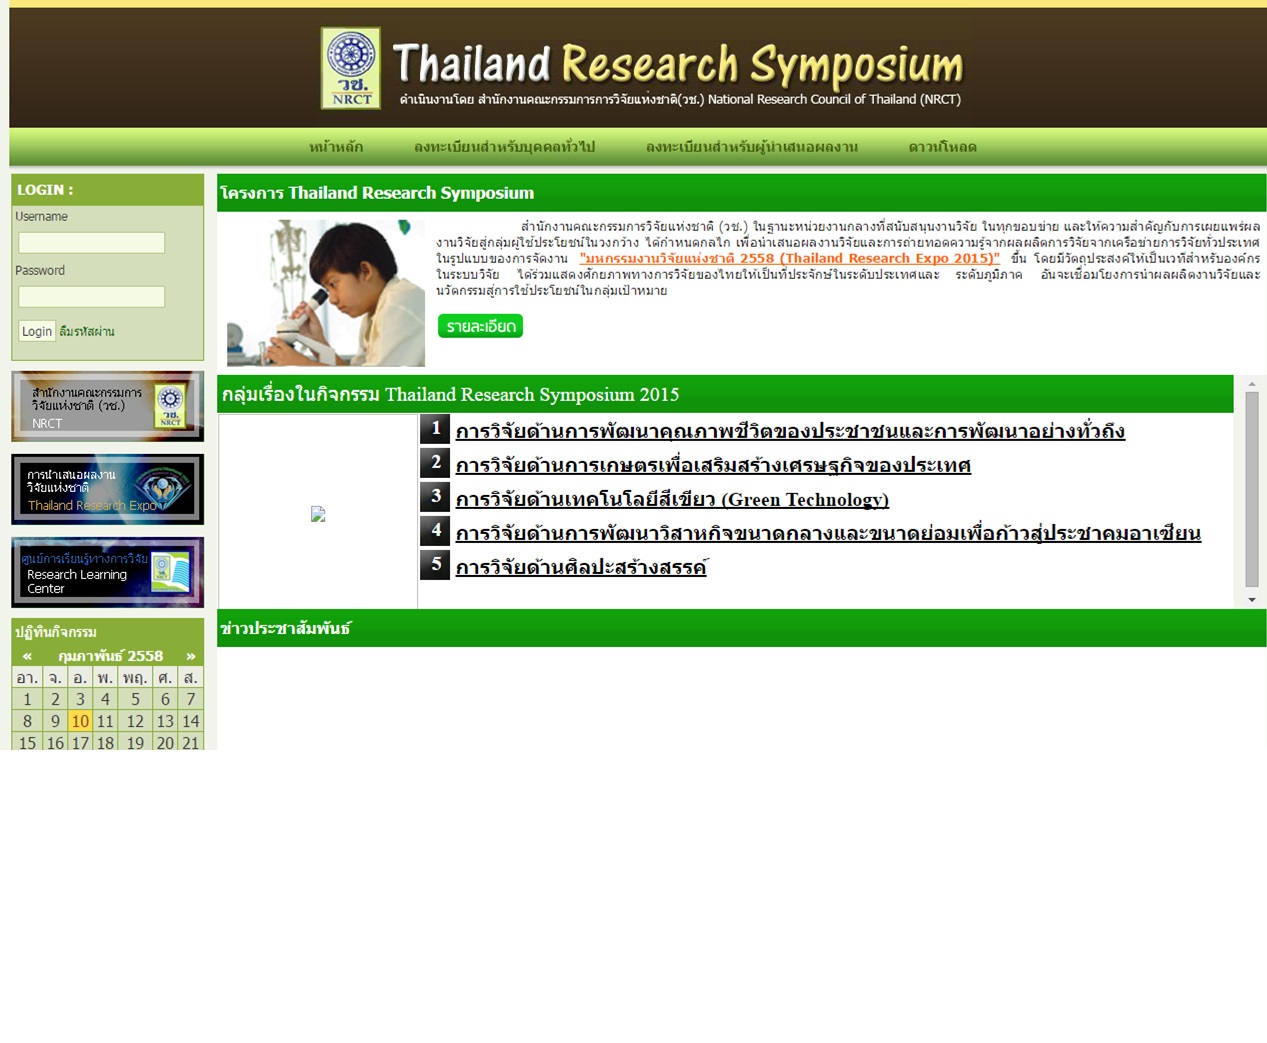 โครงการ Thailand Research Symposium 2015 